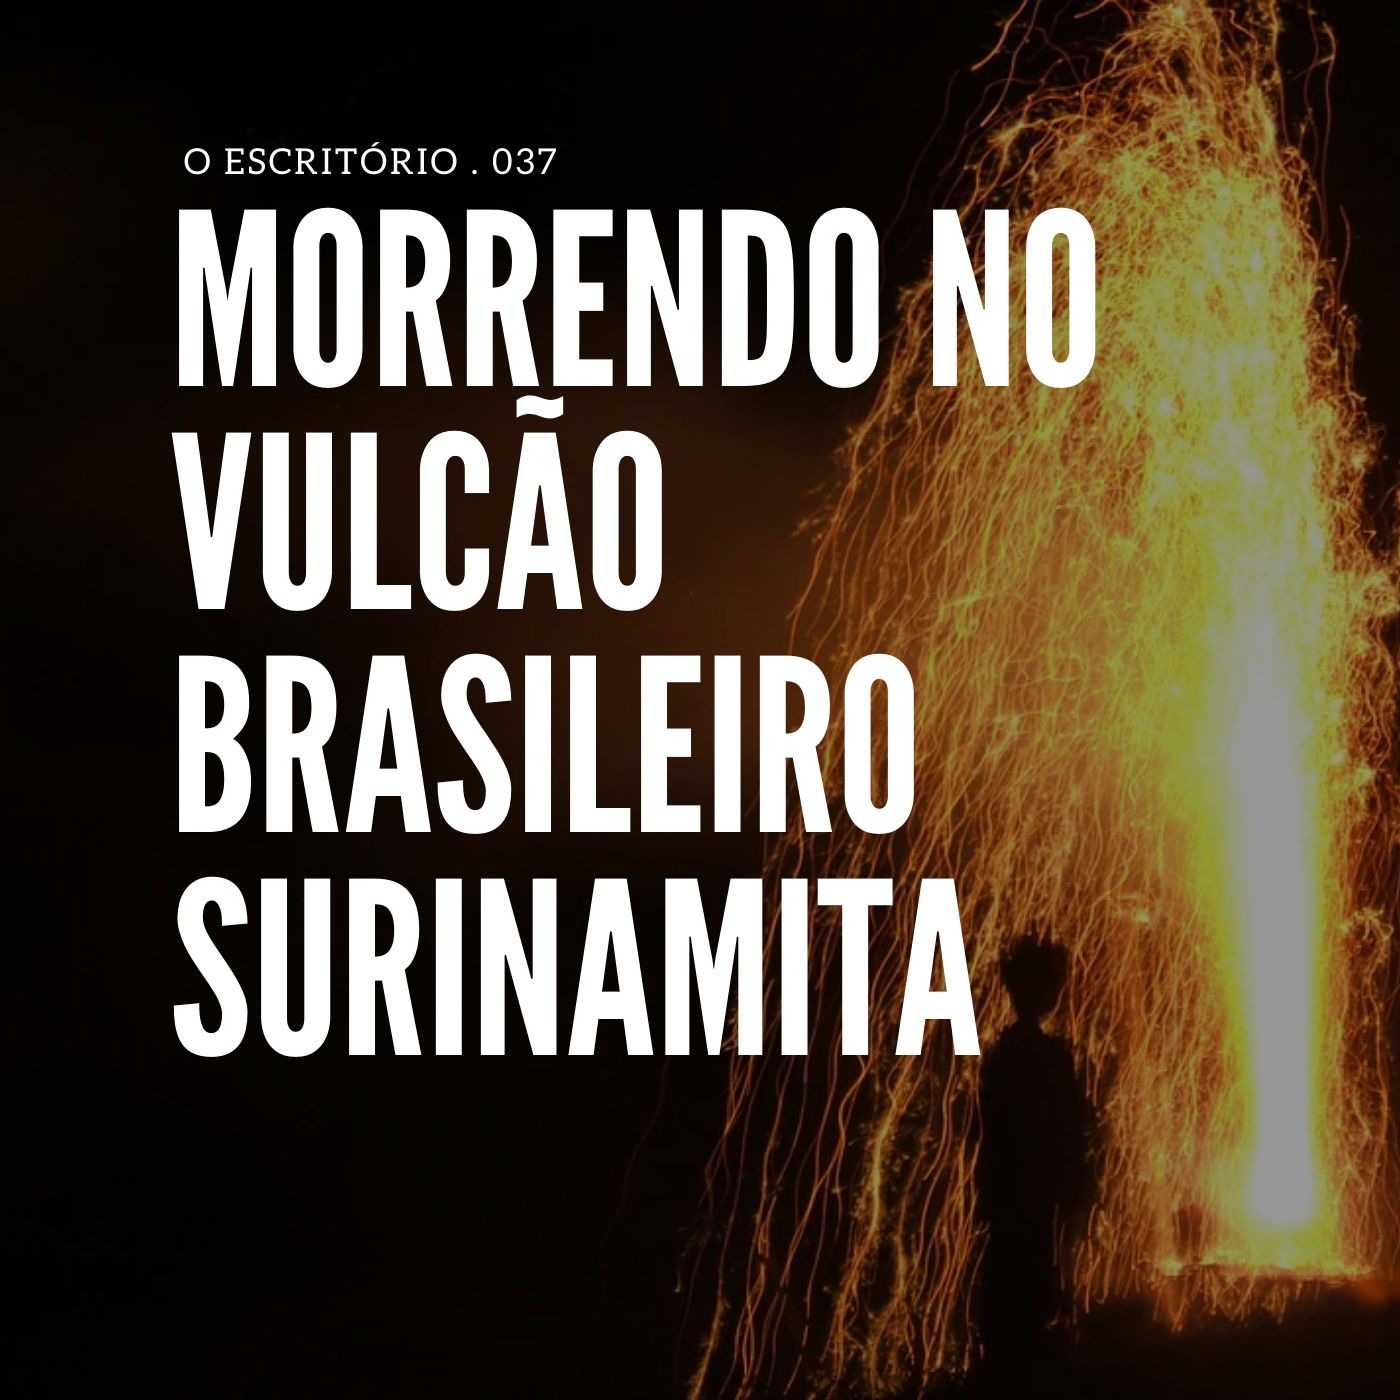 Morrendo no Vulcão Brasileiro Surinamita